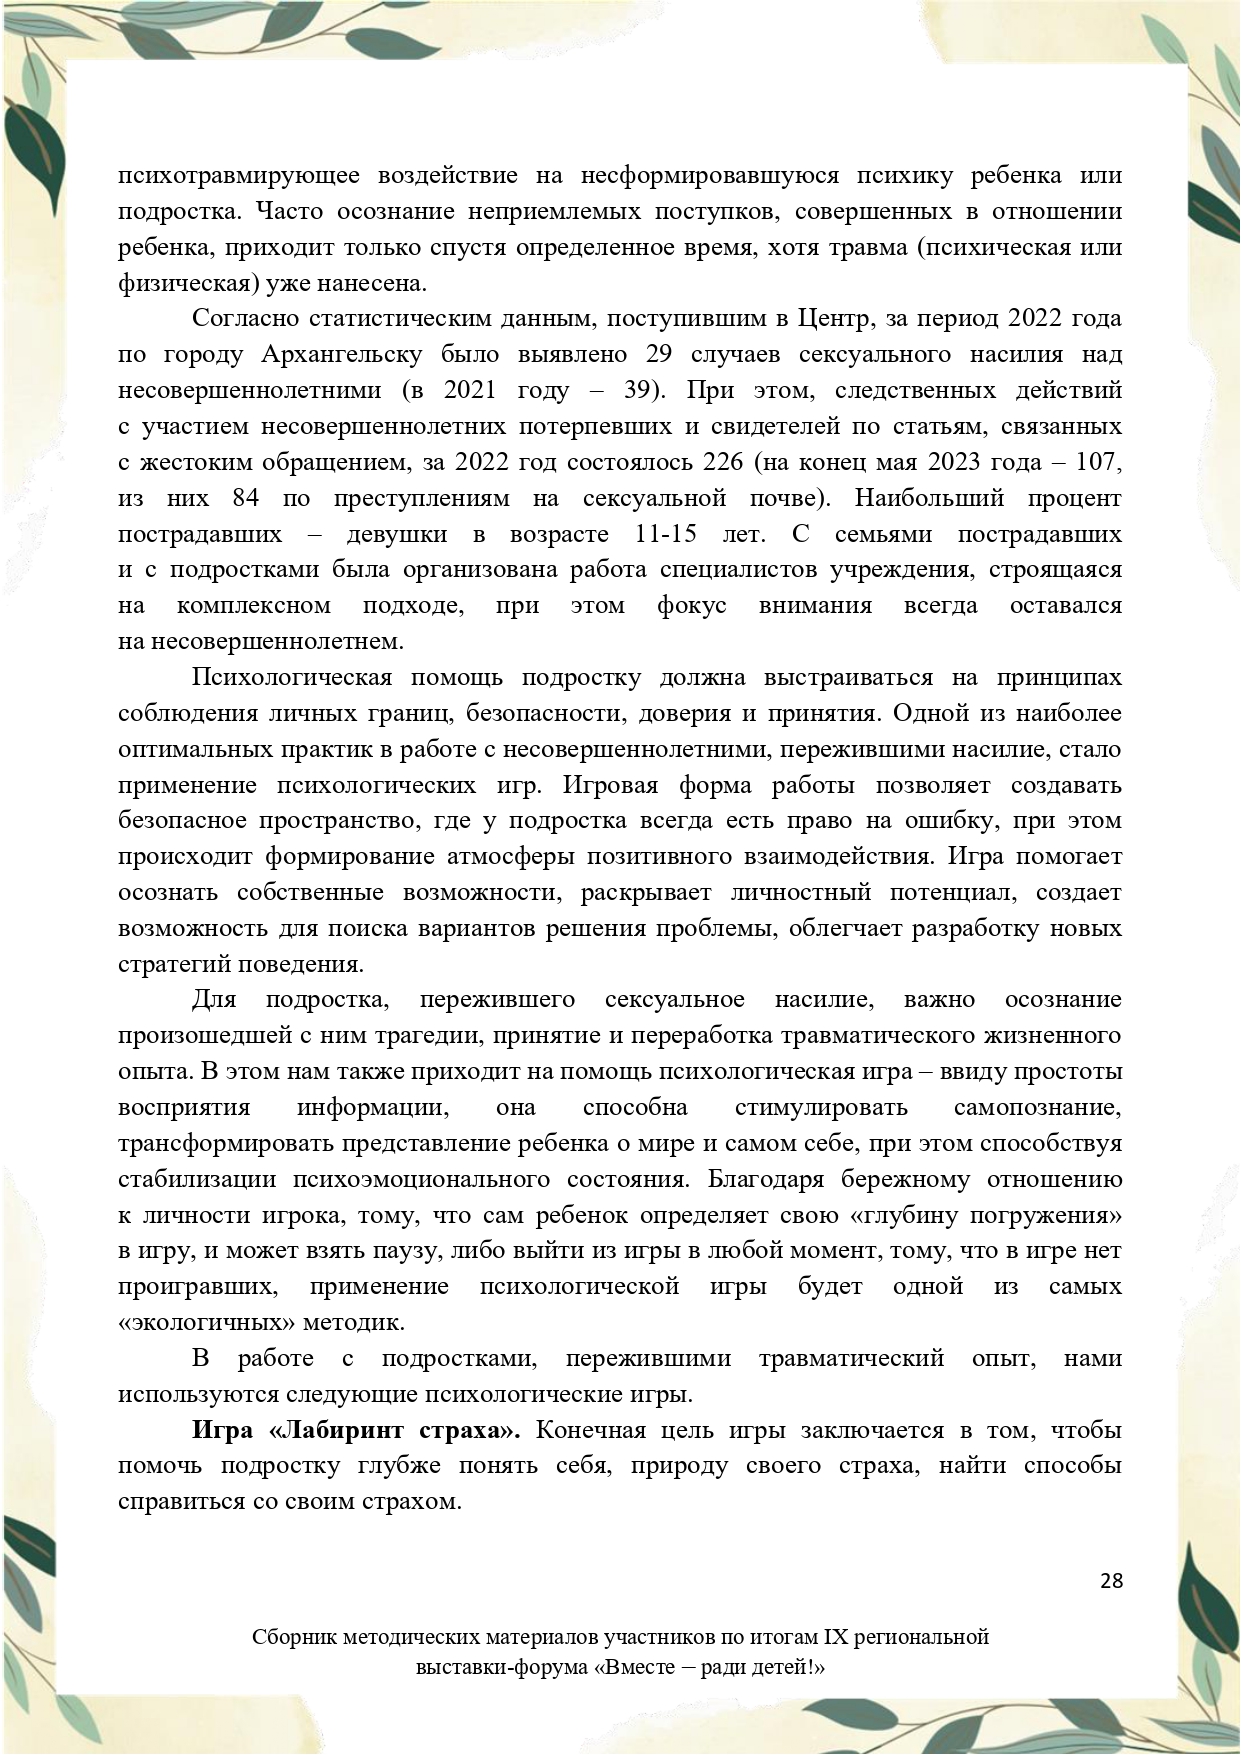 Sbornik_metodicheskikh_materialov_uchastnikov_IX_regionalnoy_vystavki-foruma_Vmeste__radi_detey_33__2023_page-0028